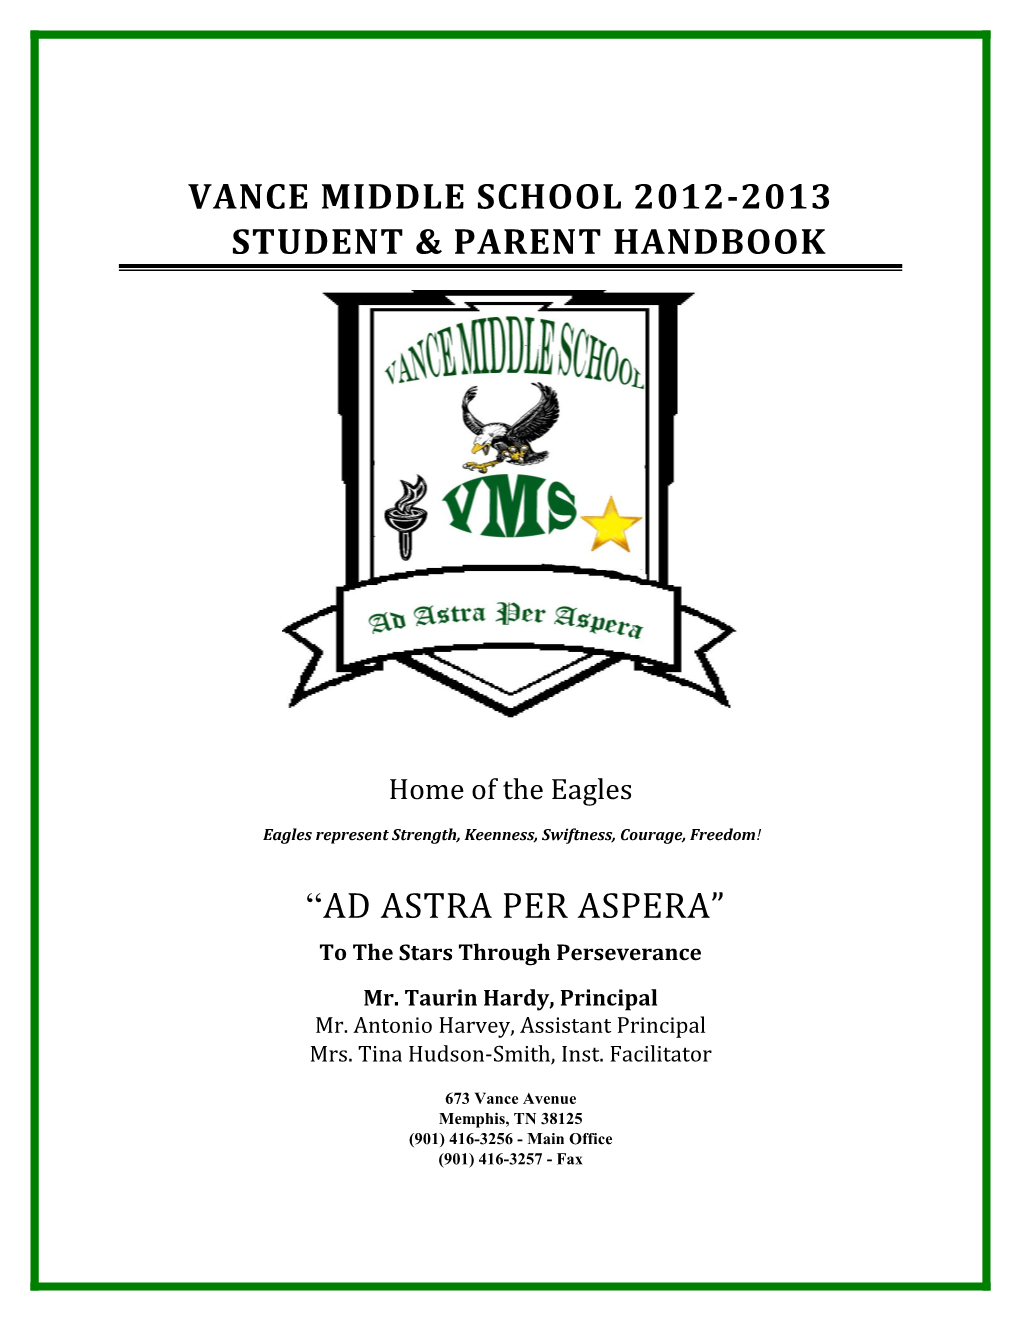 Vance Middle School 2012-2013 Student & Parent Handbook